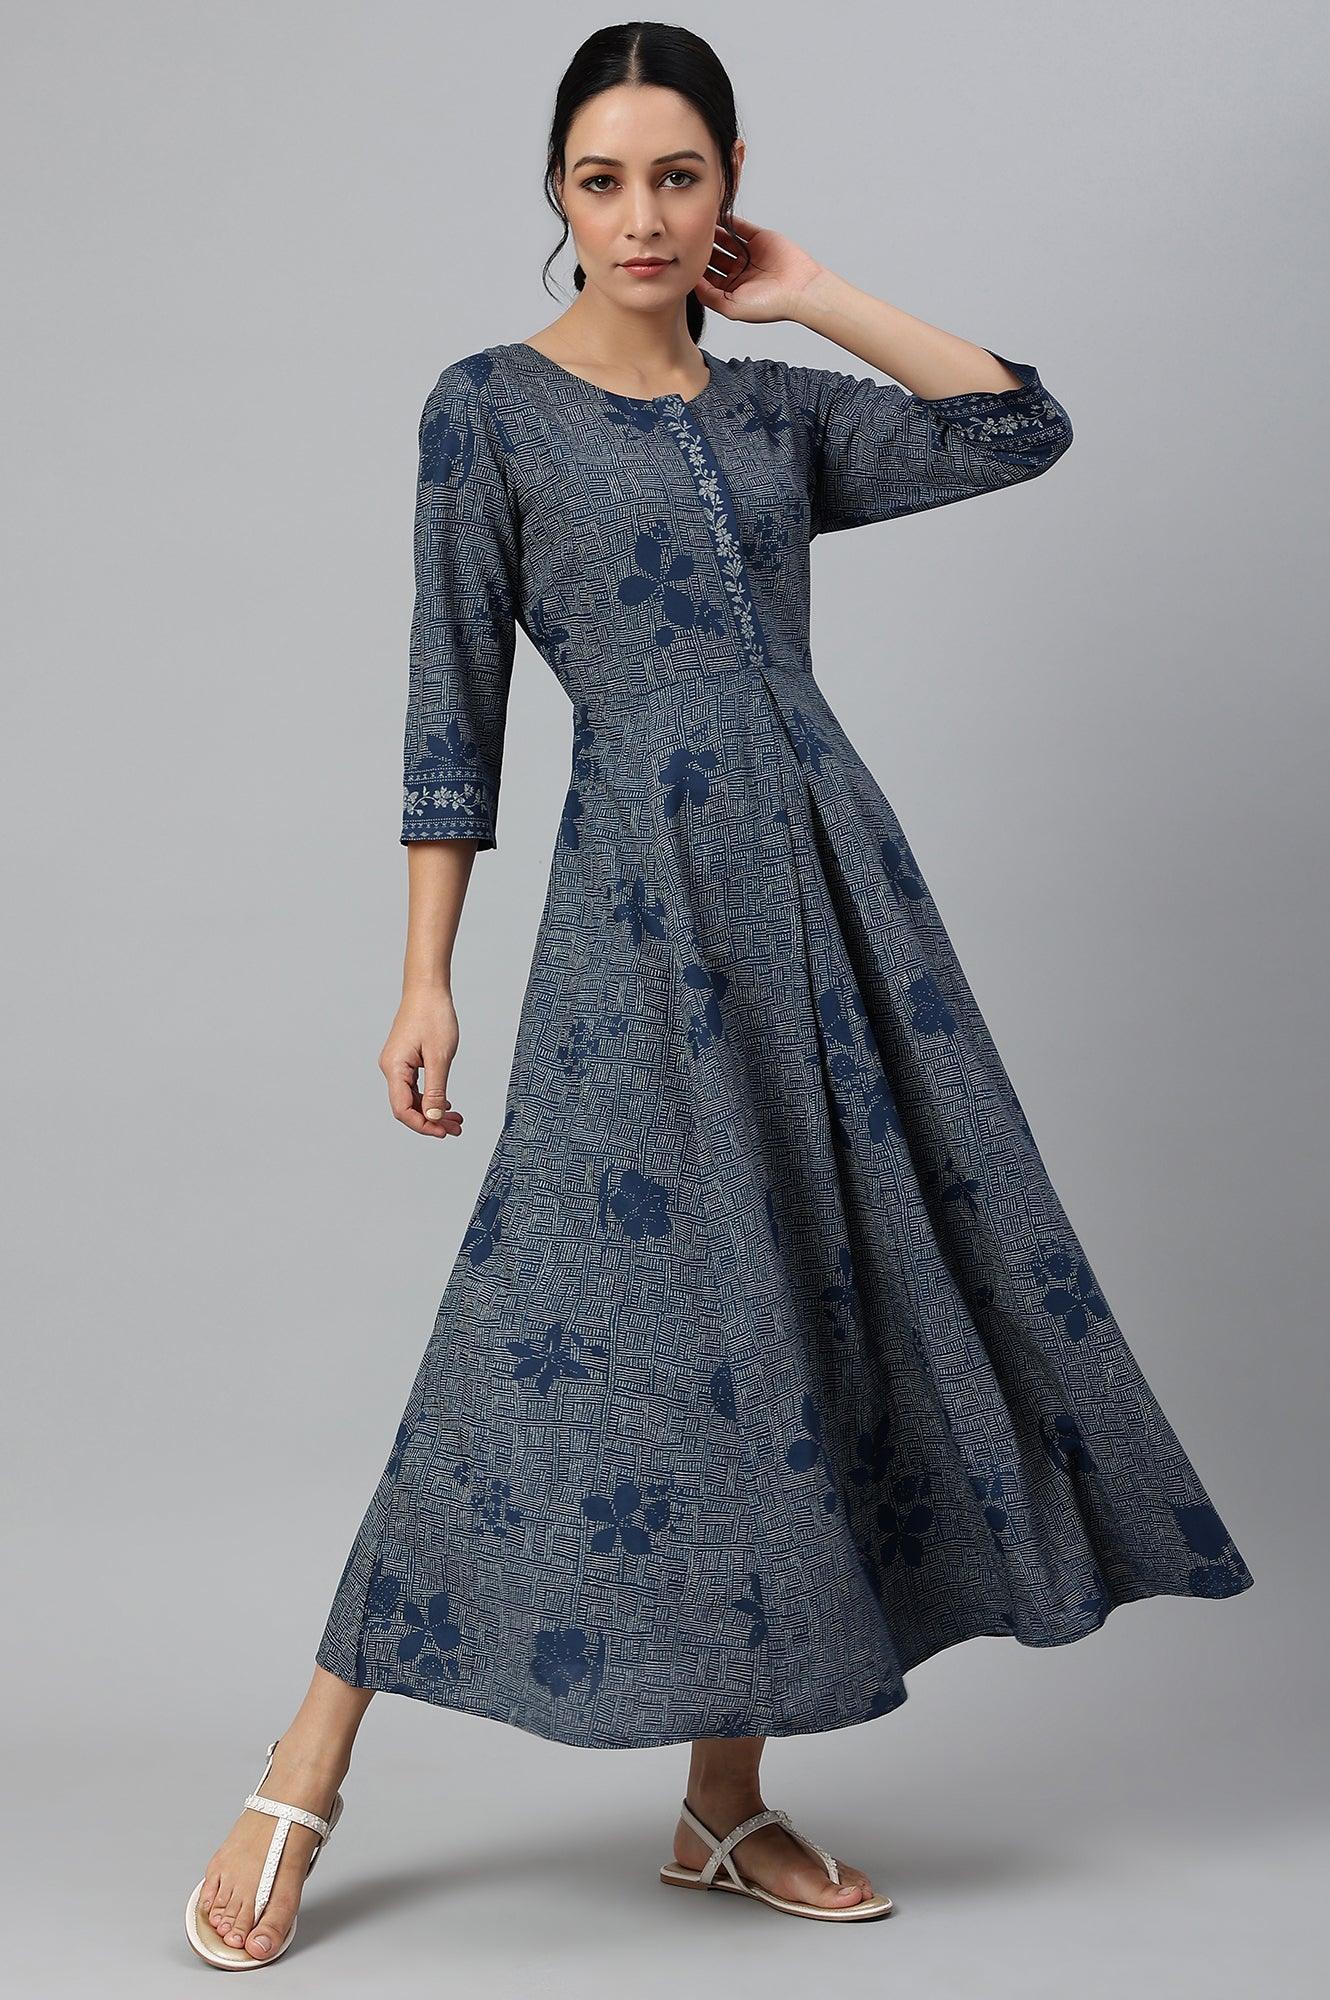 Blue Floral Printed Flared Indie Dress - wforwoman